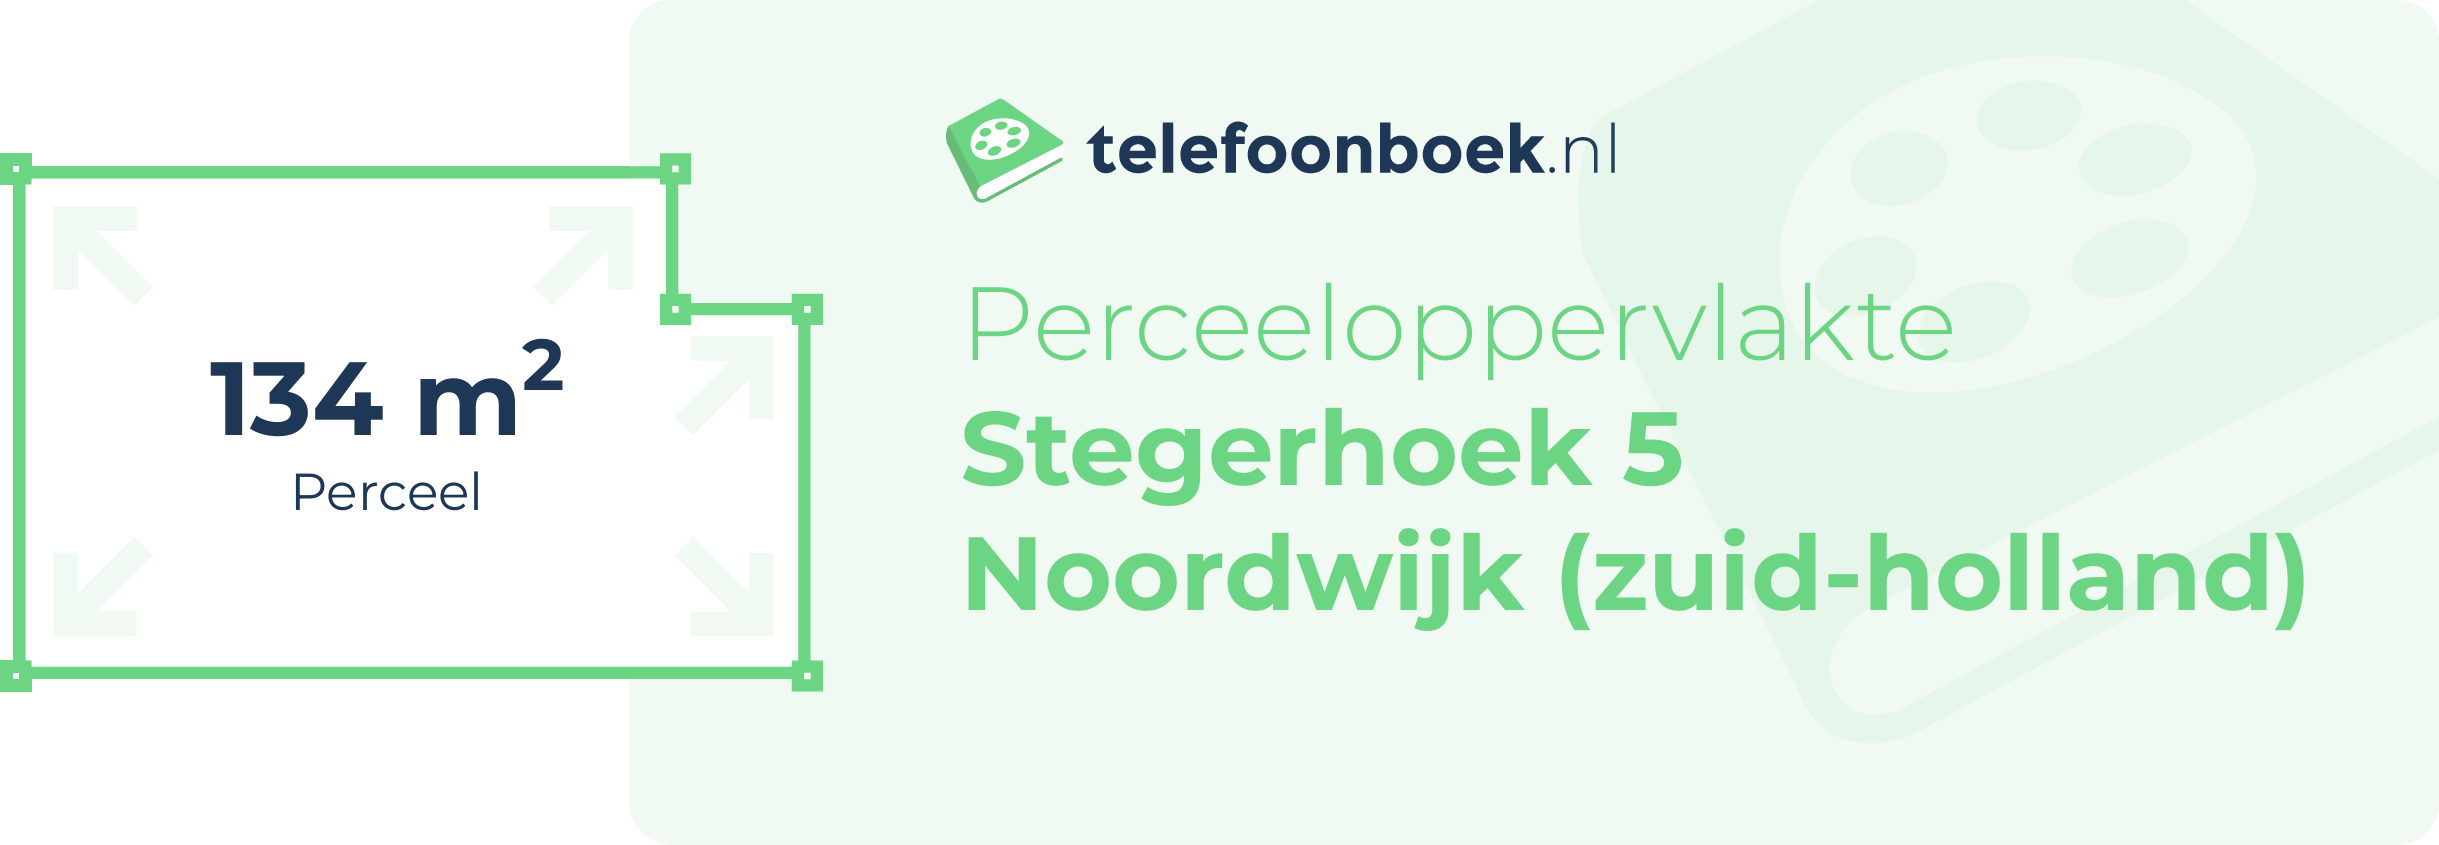 Perceeloppervlakte Stegerhoek 5 Noordwijk (Zuid-Holland)